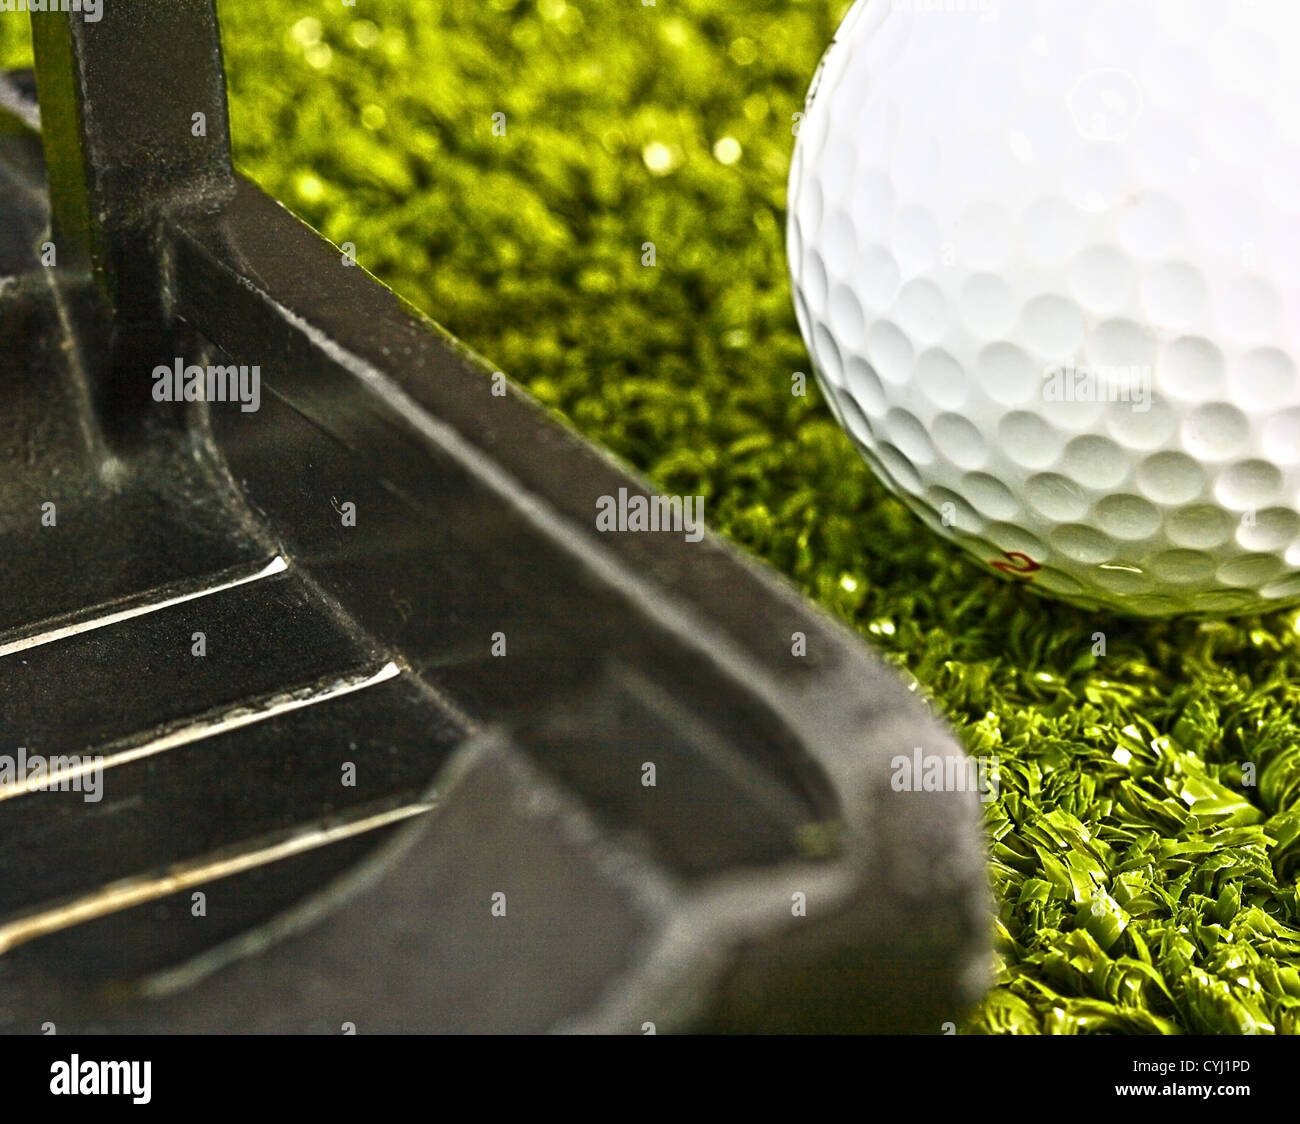 Verwenden einen Putter für die Umsetzung eines Golfballs auf dem Putting Green Stockfoto